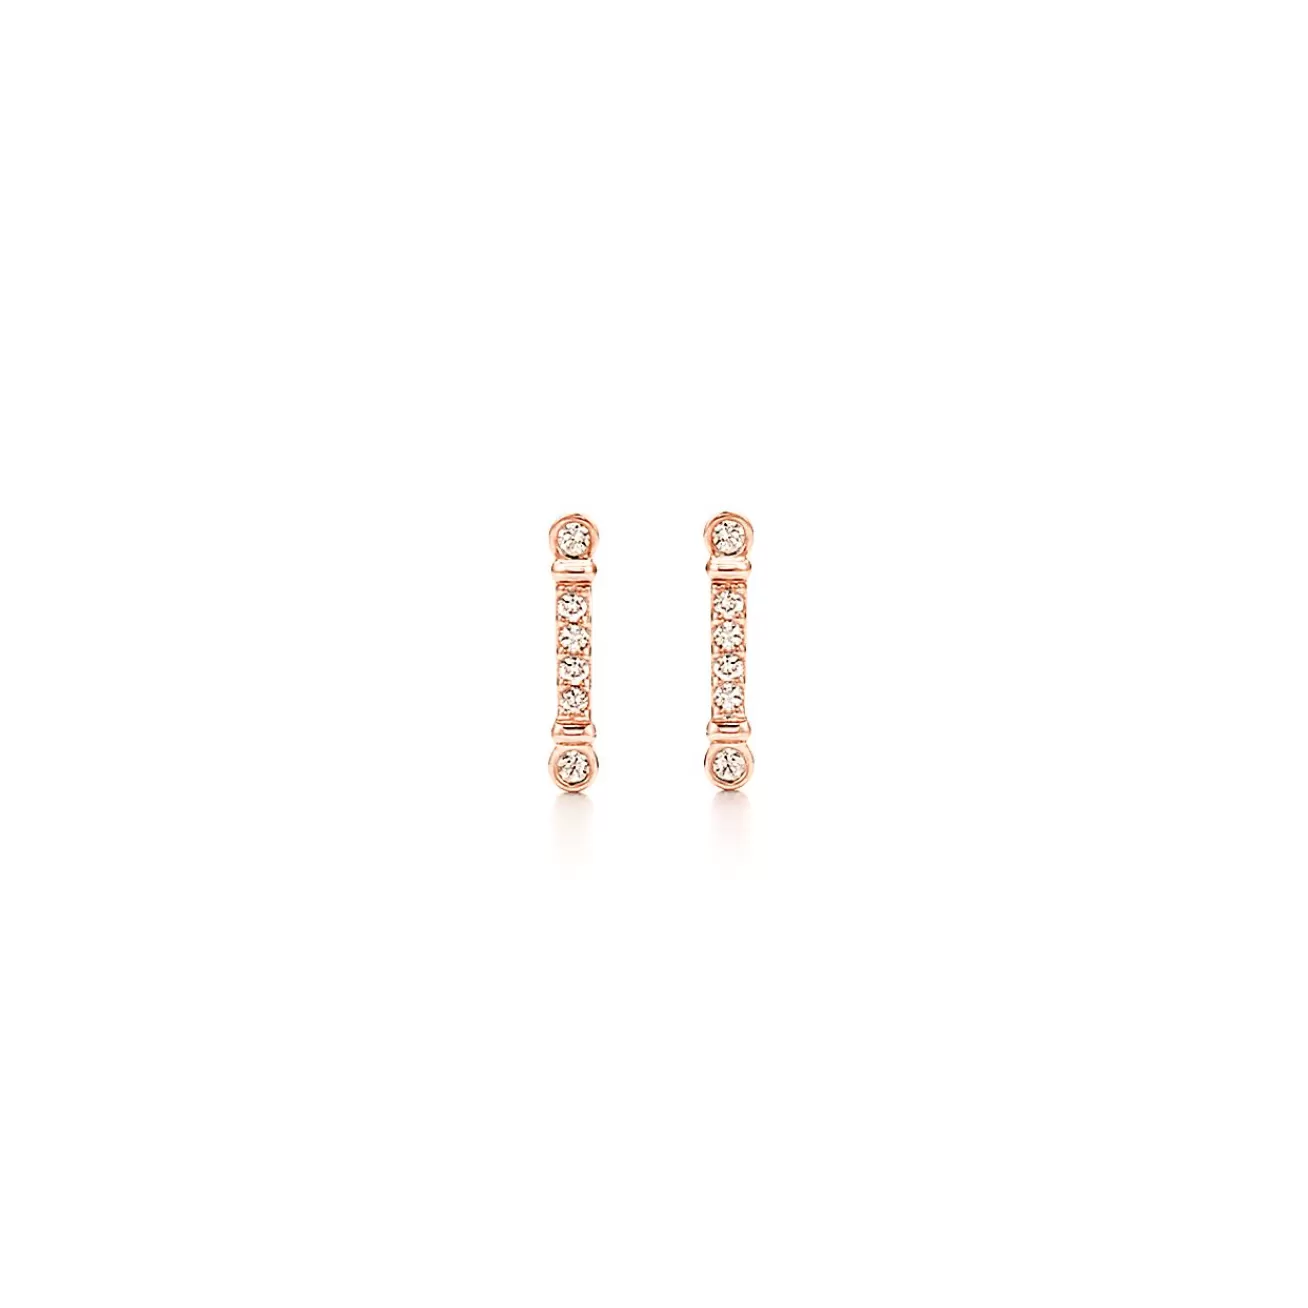 Tiffany & Co. Tiffany Fleur de Lis key bar earrings in 18k rose gold with diamonds. | ^ Earrings | Dainty Jewelry